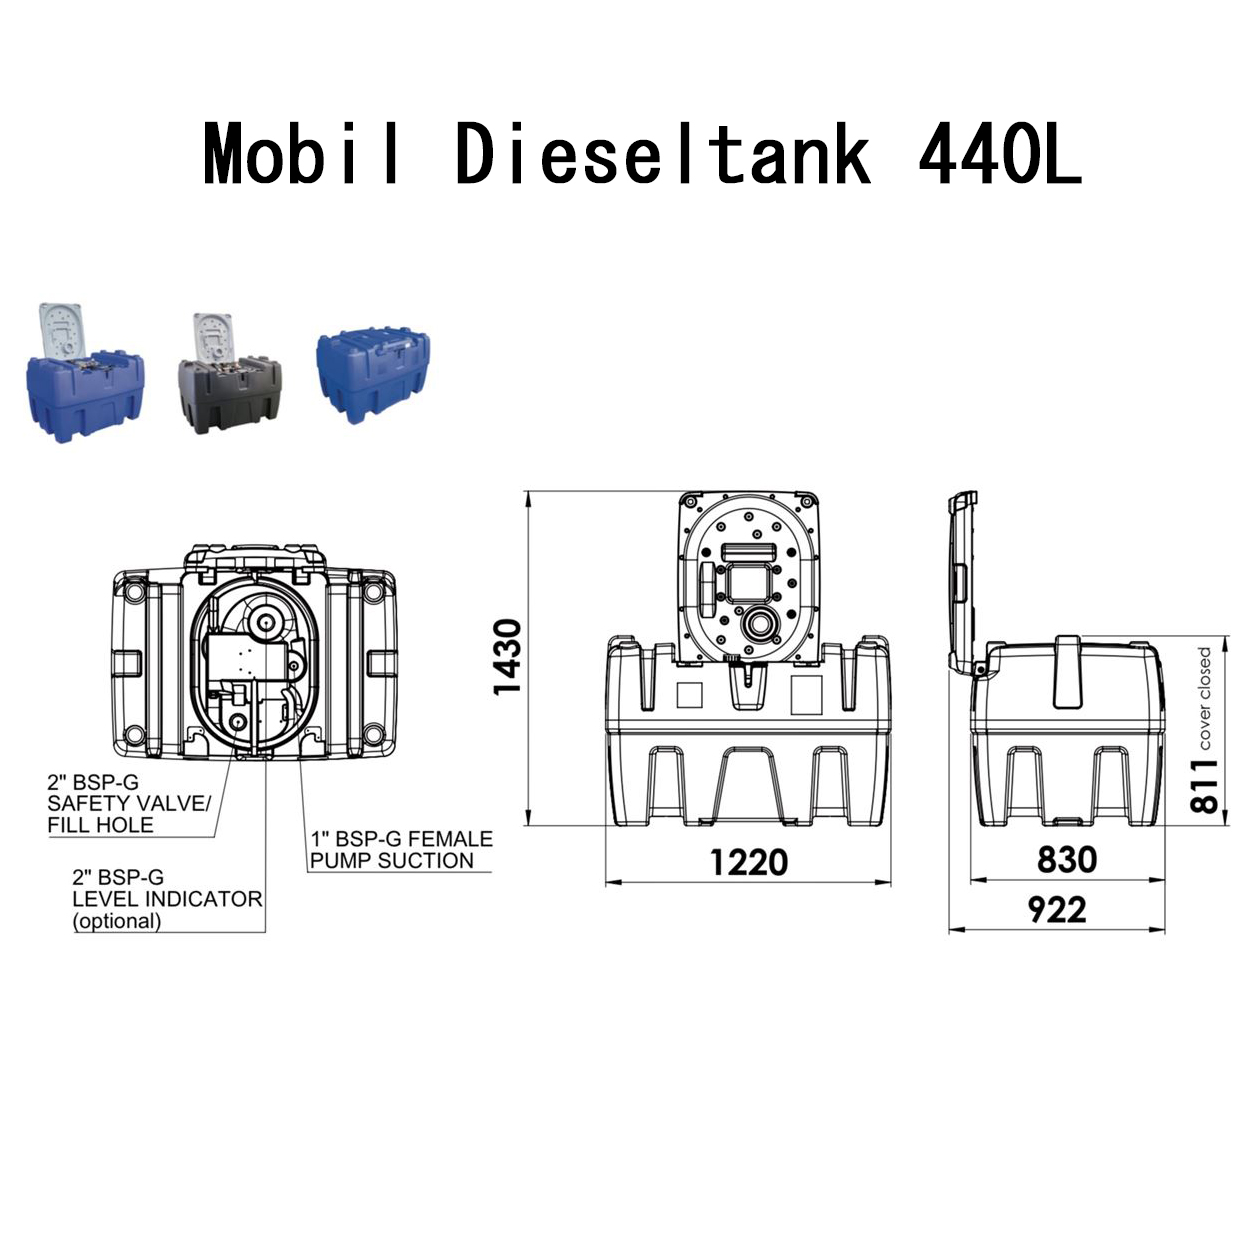 Mobil dieseltank 440l med lock - 12V / 24v / 230v